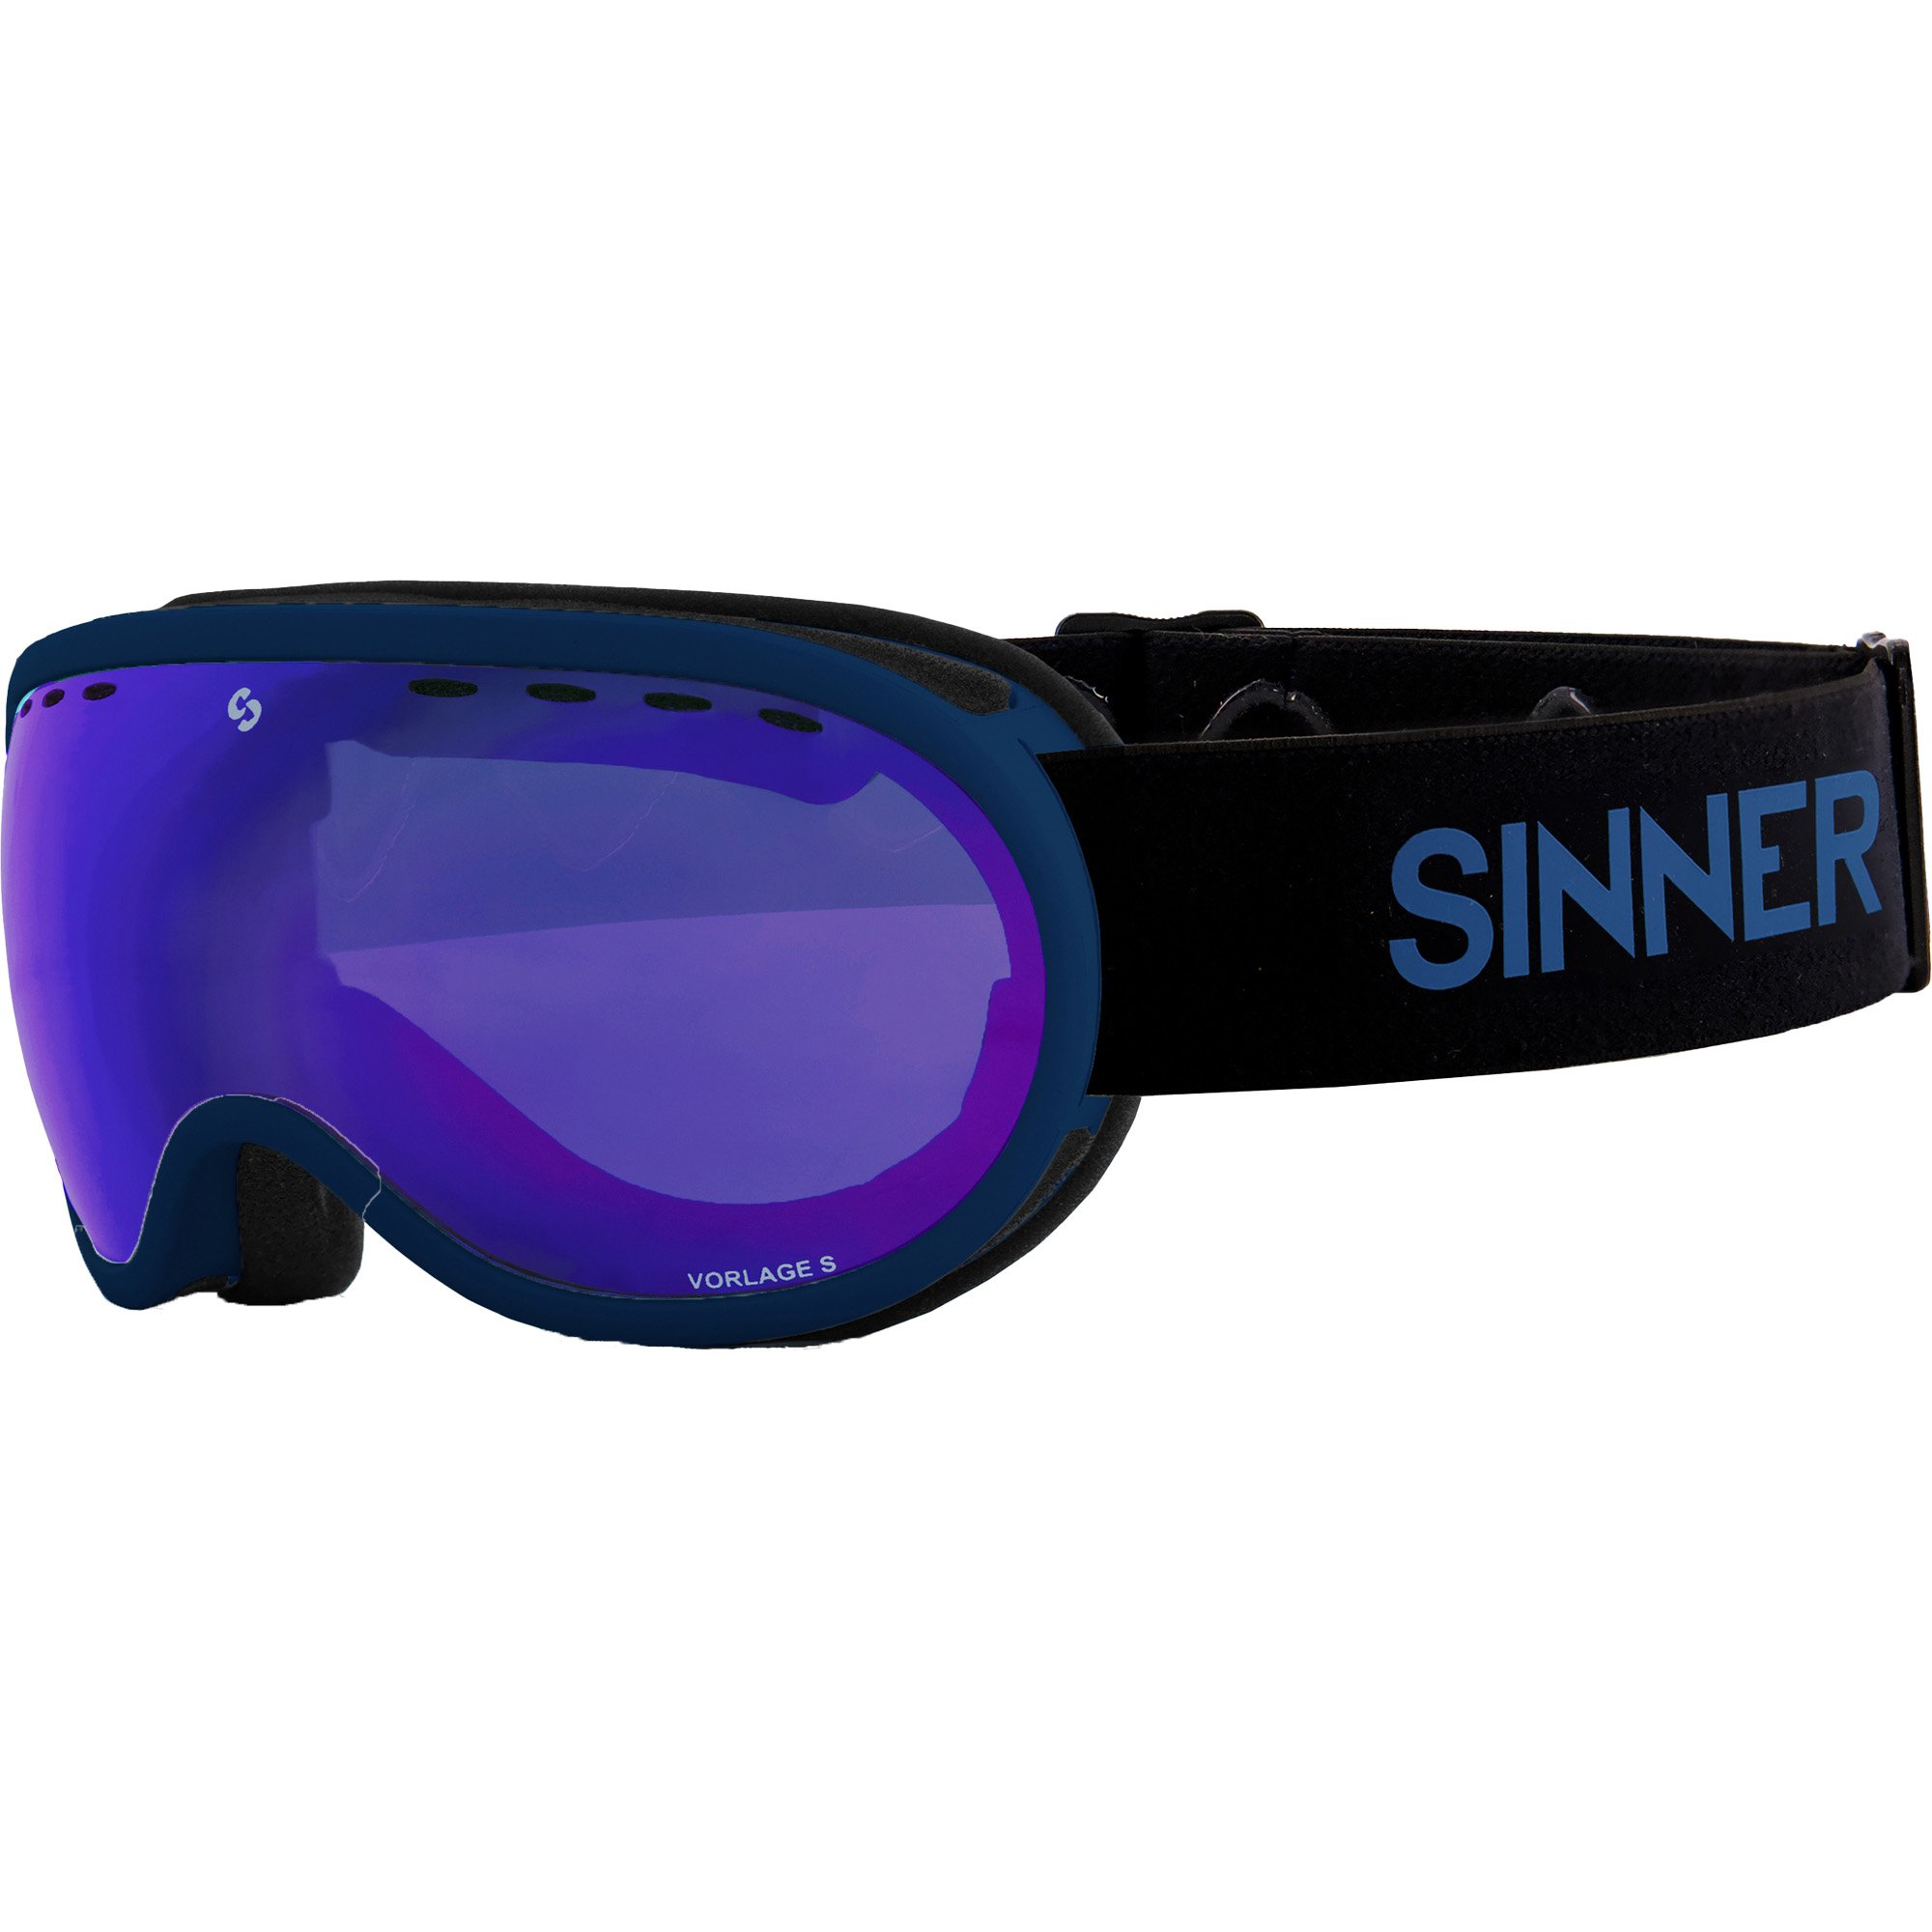 Sinner Vorlage S Ski/Snowboard Goggles